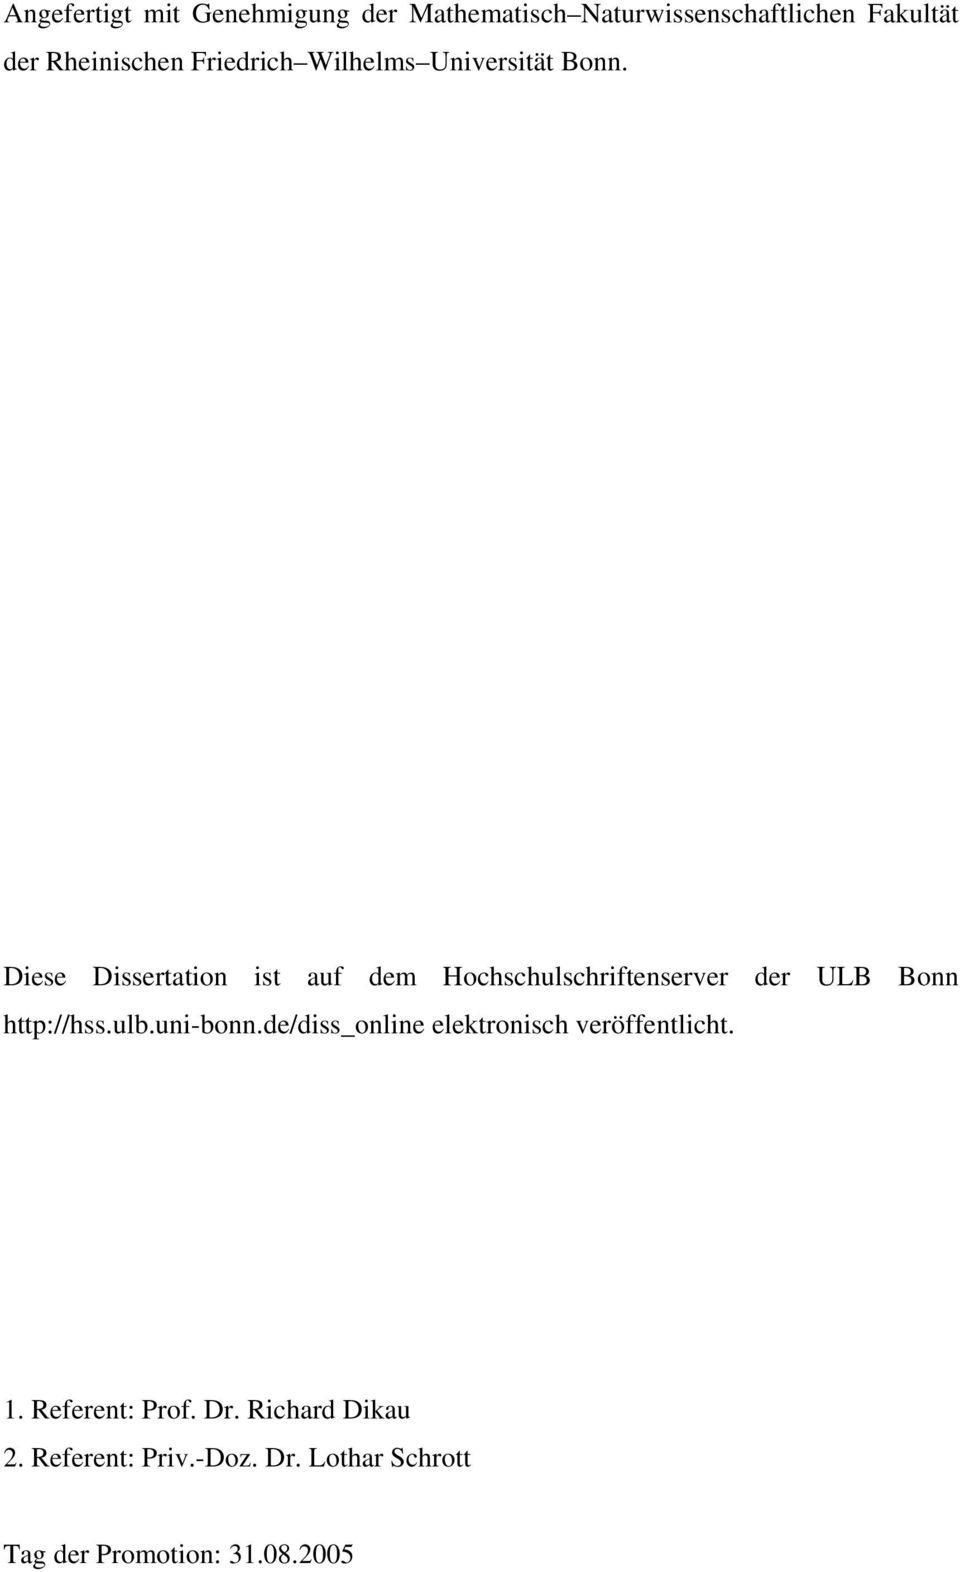 Diese Dissertation ist auf dem Hochschulschriftenserver der ULB Bonn http://hss.ulb.uni-bonn.